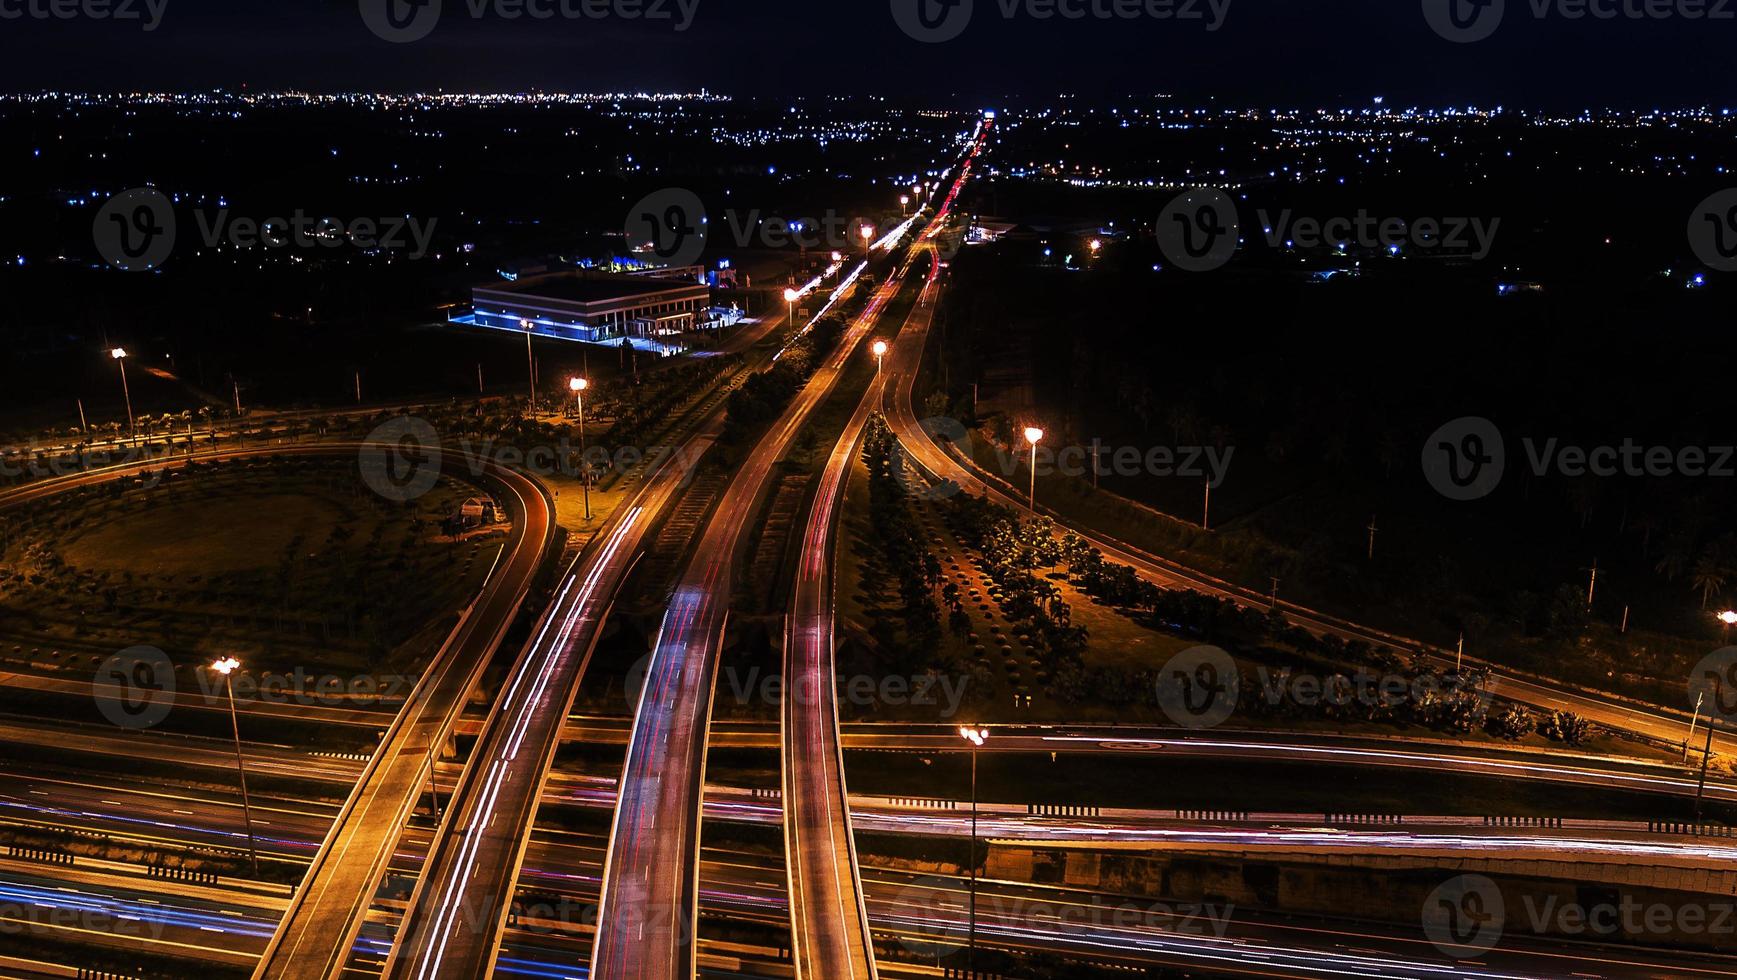 über der stadtautobahn bei nacht - vogelperspektive - drohne - draufsicht foto